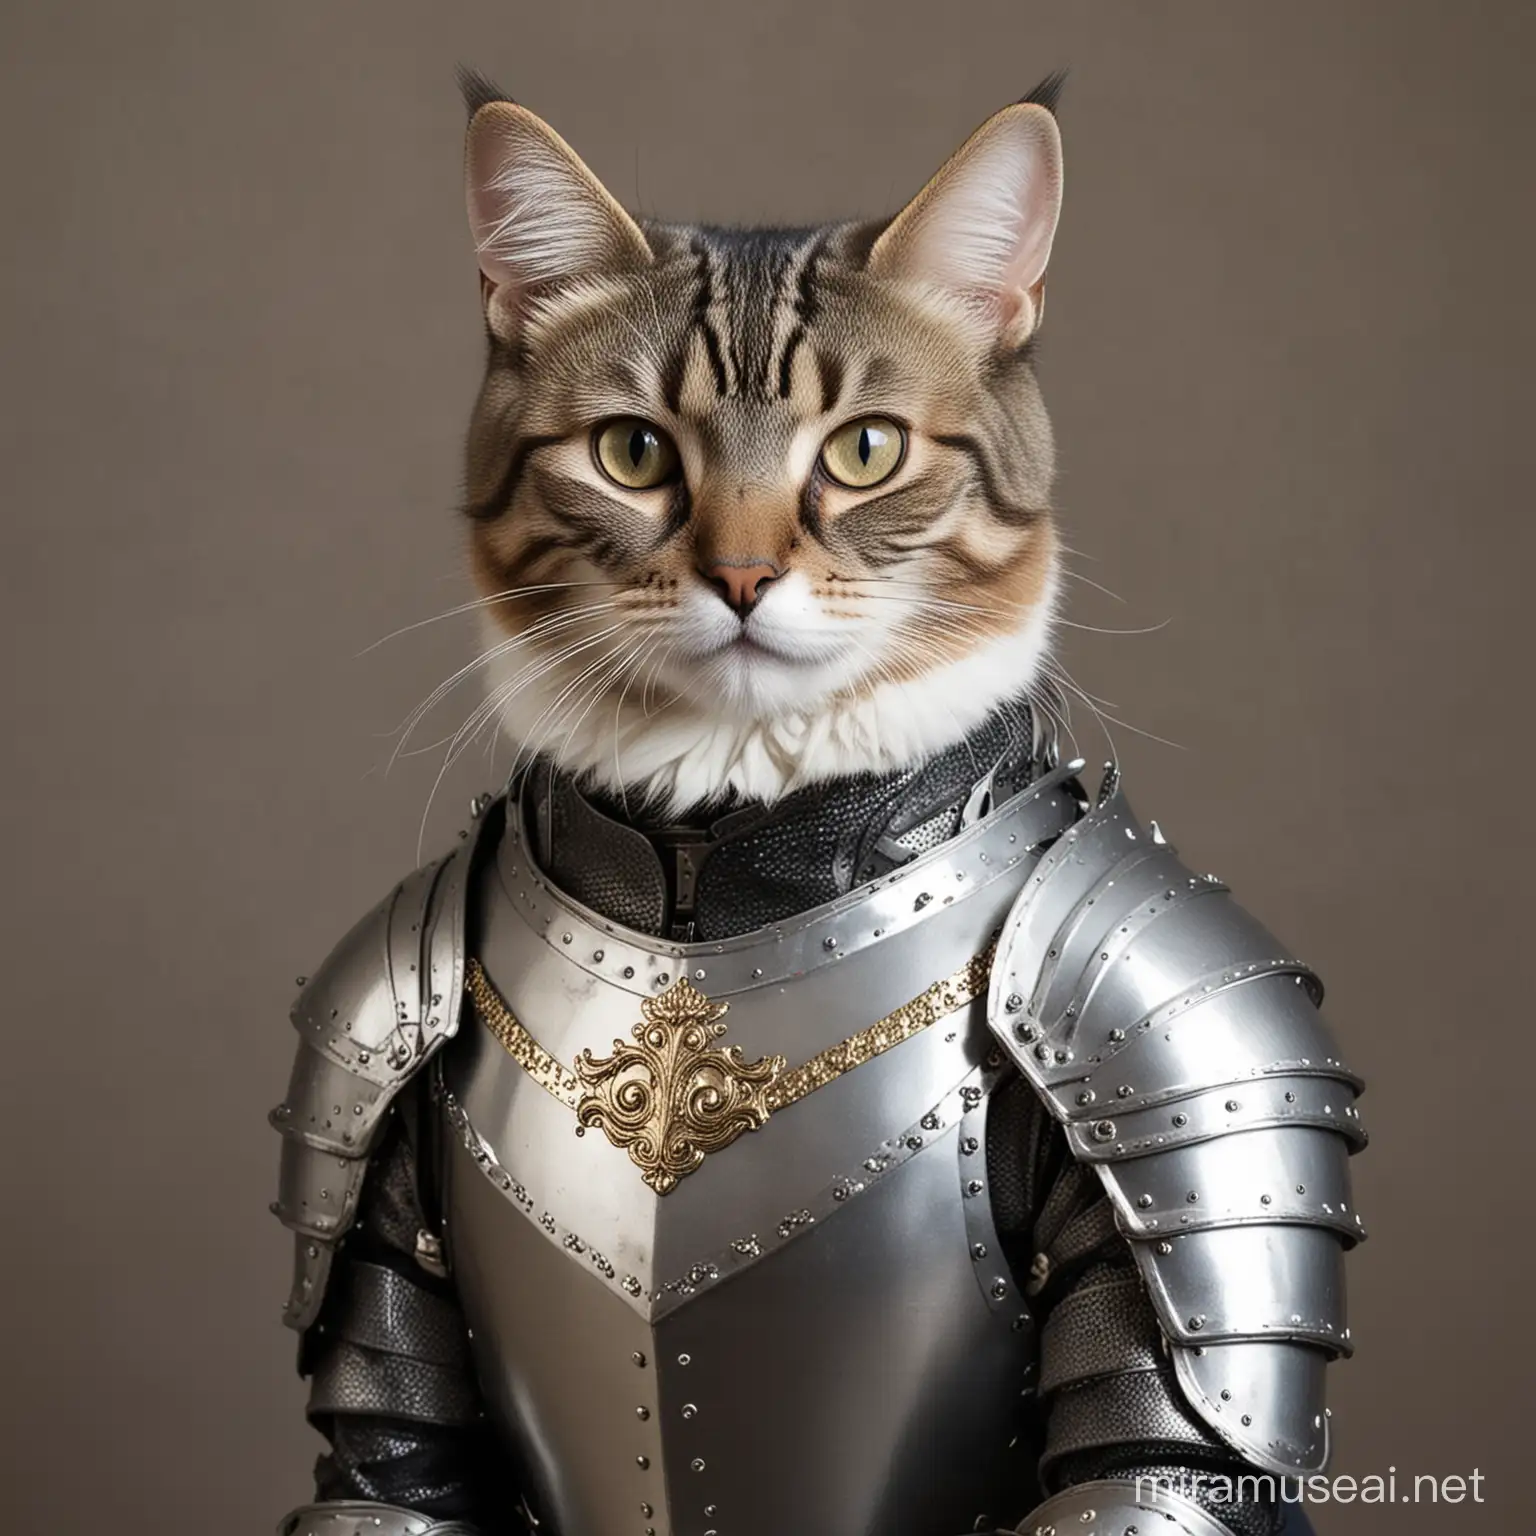 Feline Knight Cat Wearing Medieval Armor